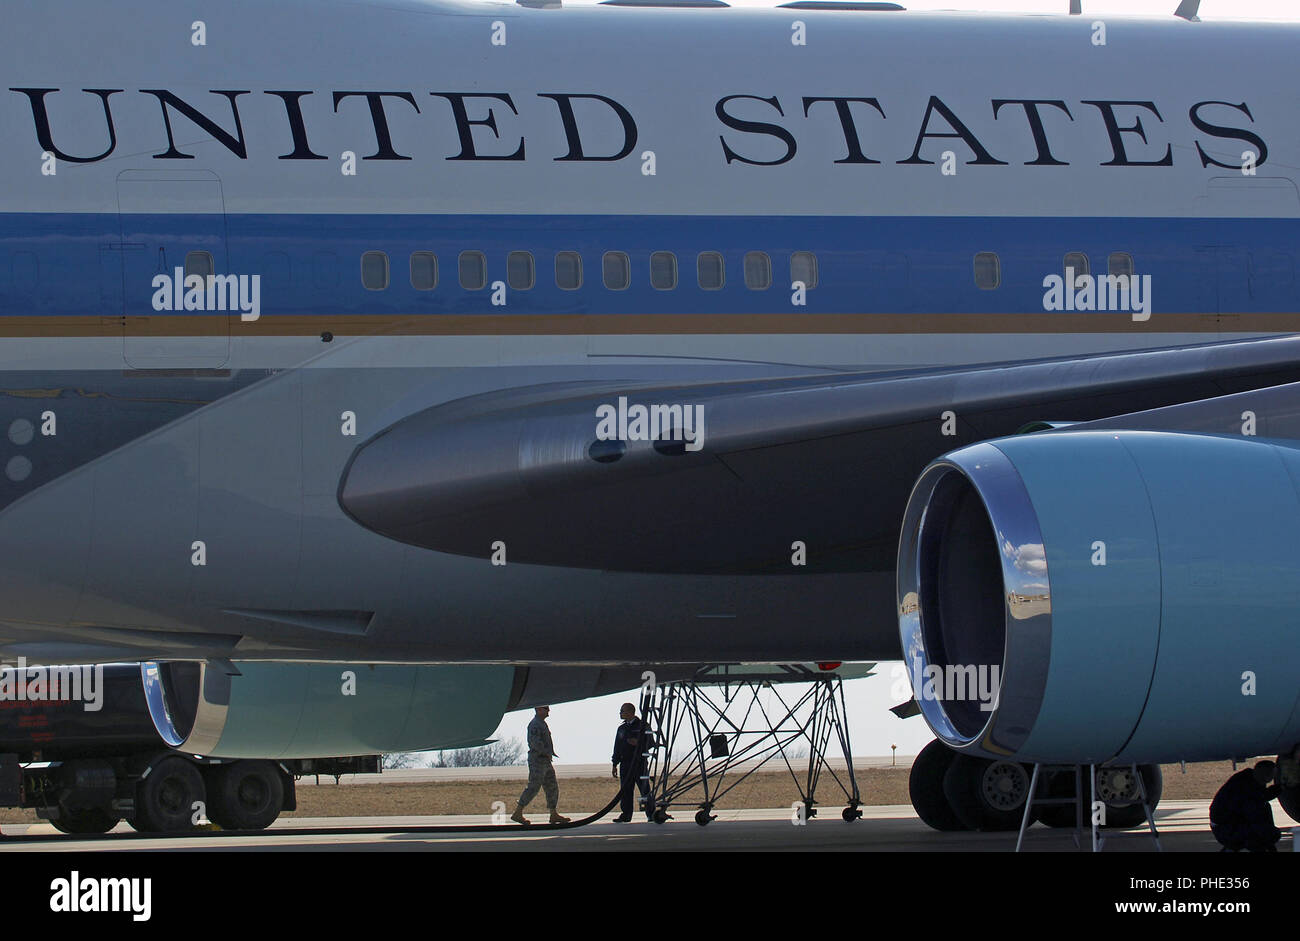 Flieger von der 375 Logistik Bereitschaft Squadron auftanken, Air Force One, nachdem Präsident Obama März 10, 2010 Lambert - St. Louis International Airport. Stockfoto